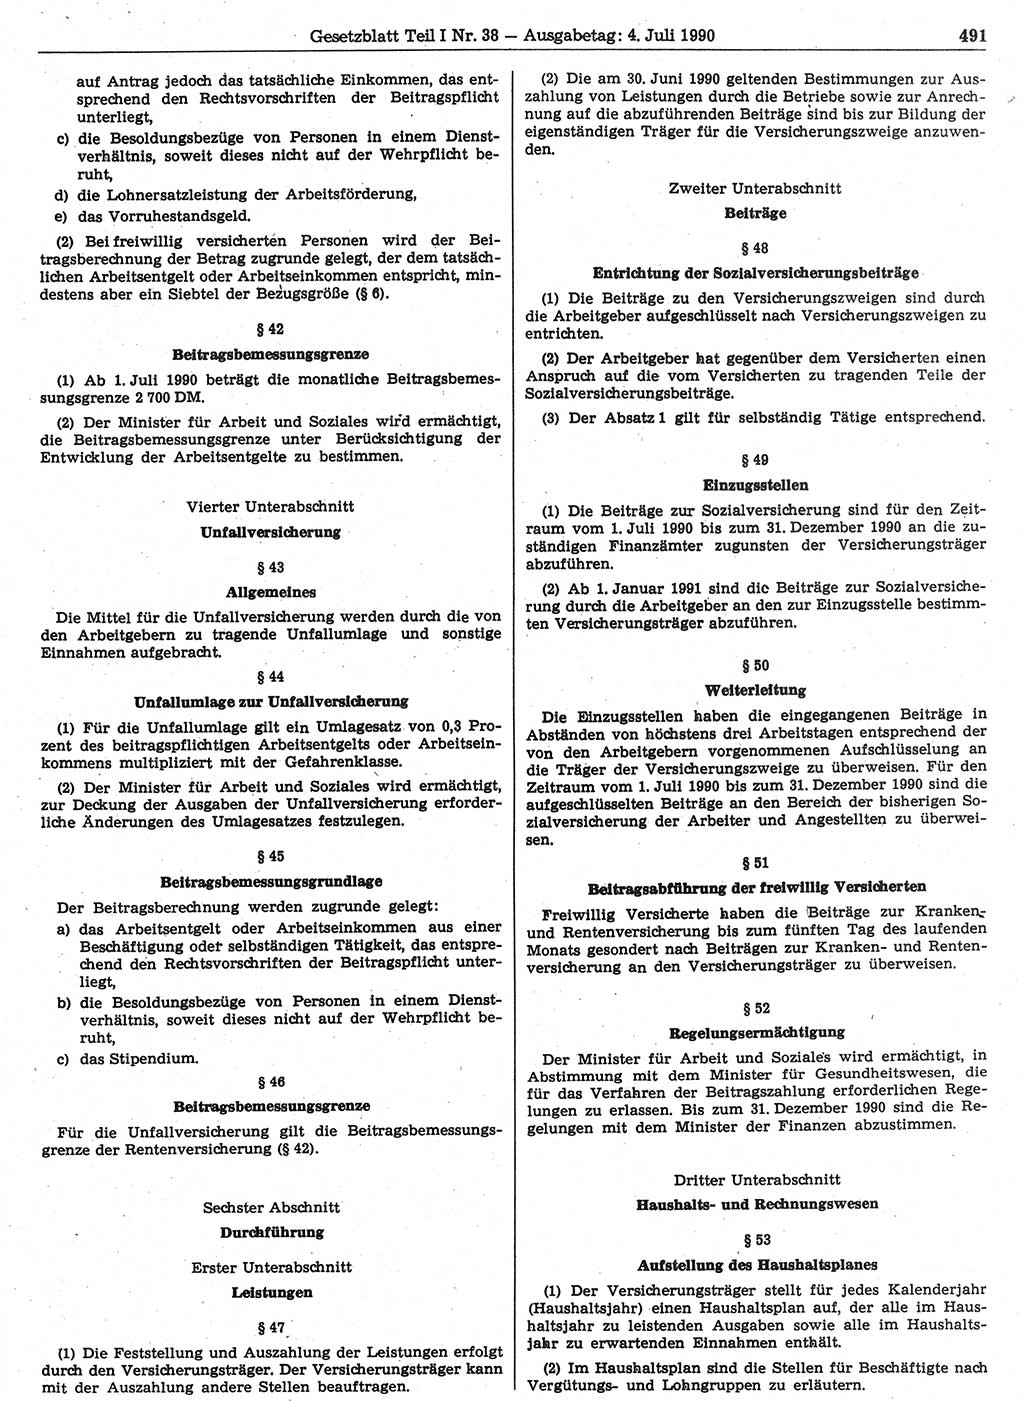 Gesetzblatt (GBl.) der Deutschen Demokratischen Republik (DDR) Teil Ⅰ 1990, Seite 491 (GBl. DDR Ⅰ 1990, S. 491)